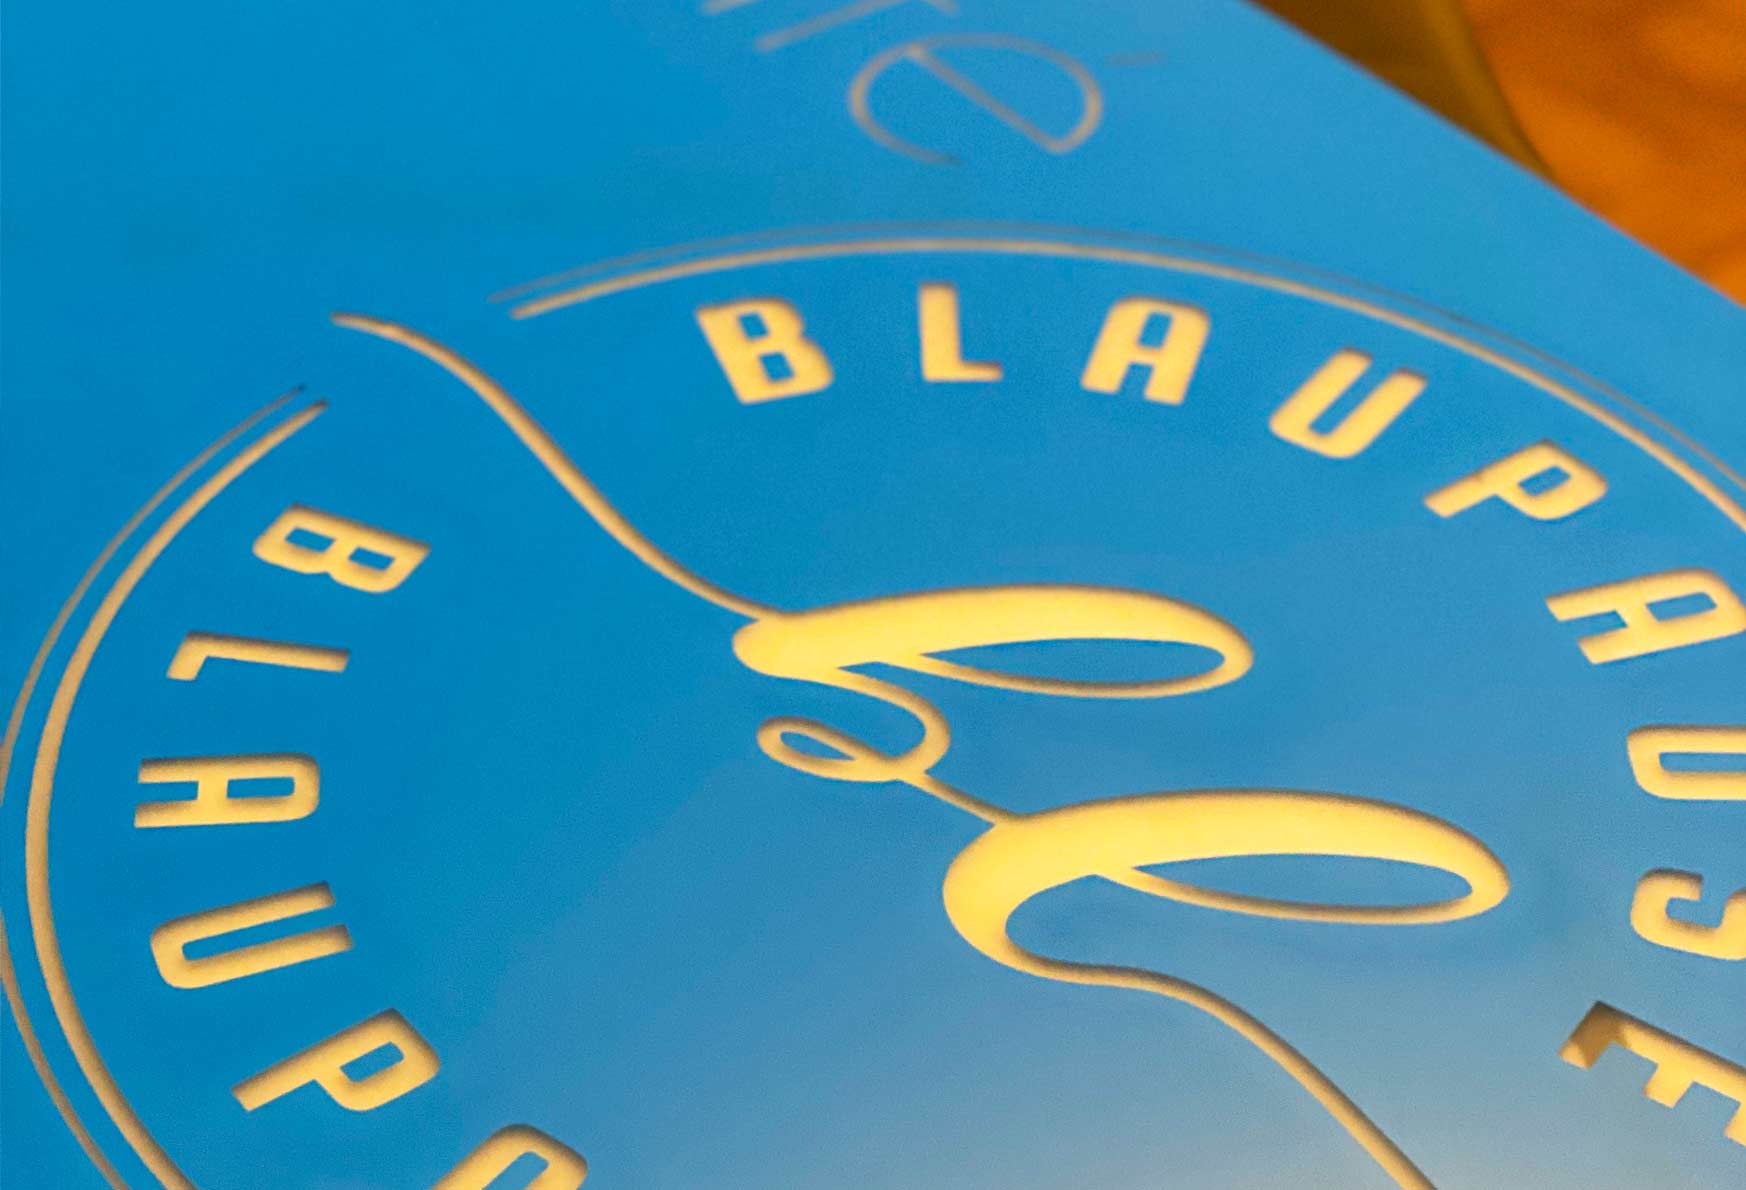 Nahaufnahme eines blauen, folierten Schildes, das in einem Kreis die Buchstaben 'Blaupause' und ein geschwungenes Logo erkennen lässt.